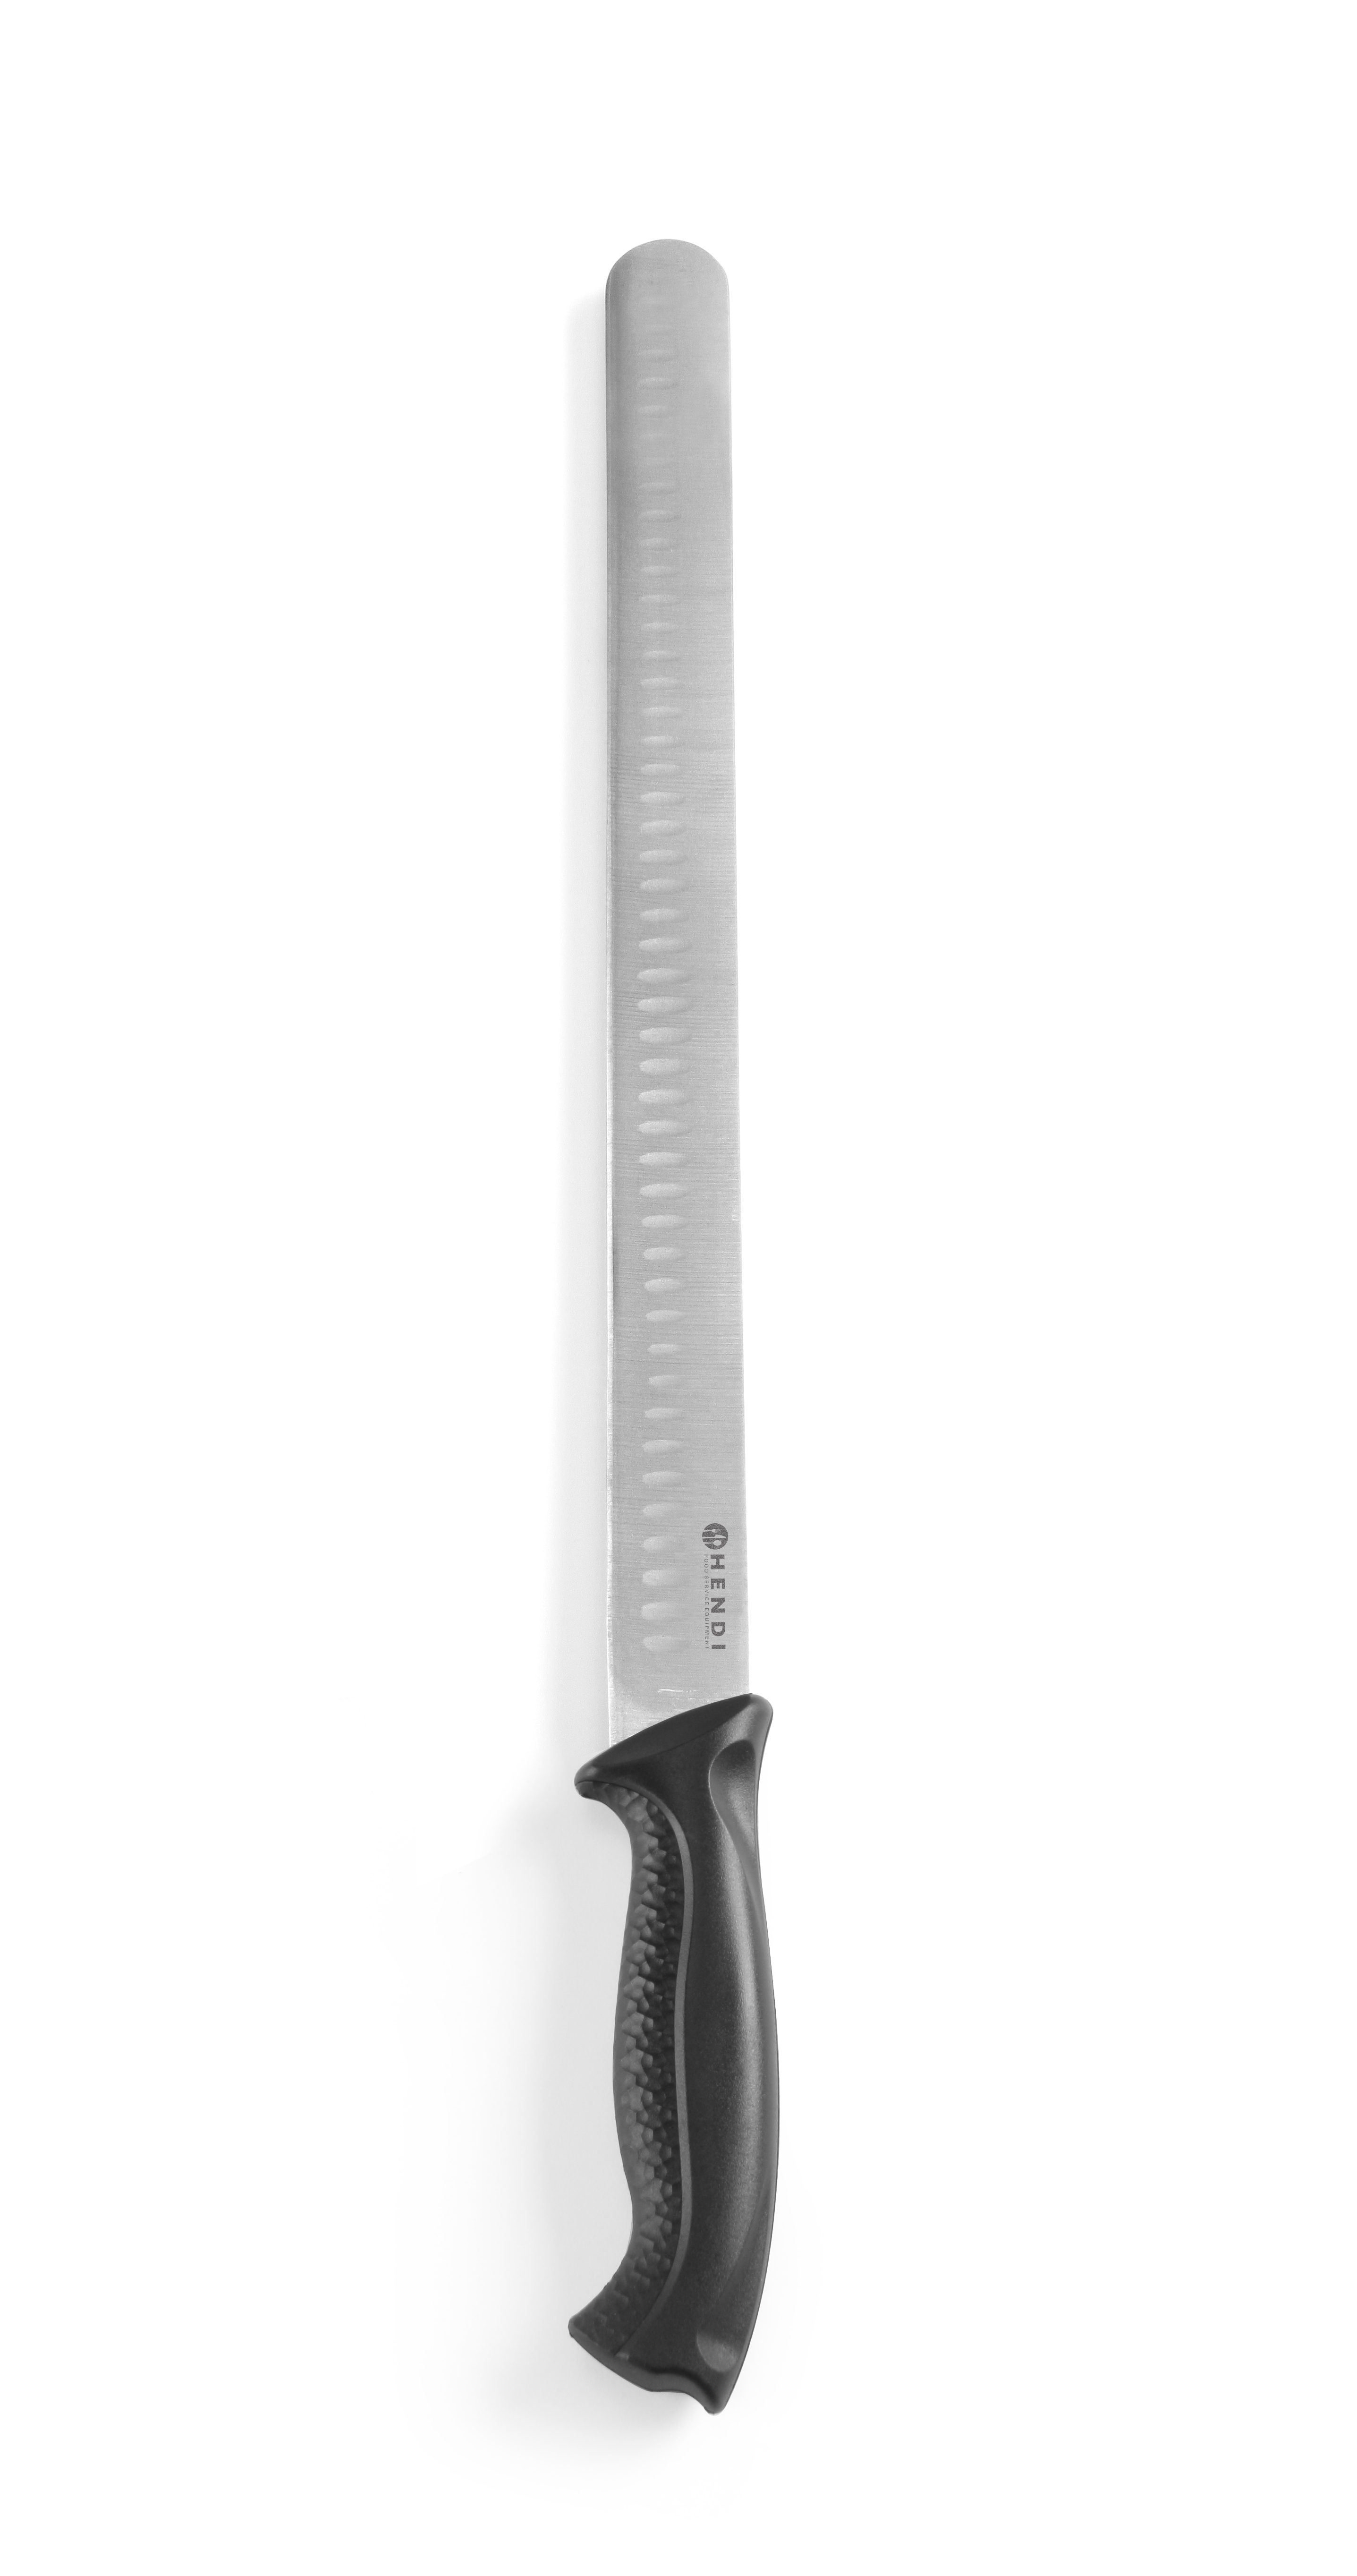 Schinken-Lachsmesser HACCP schwarz, 350mm, mit Kunststoffgriff